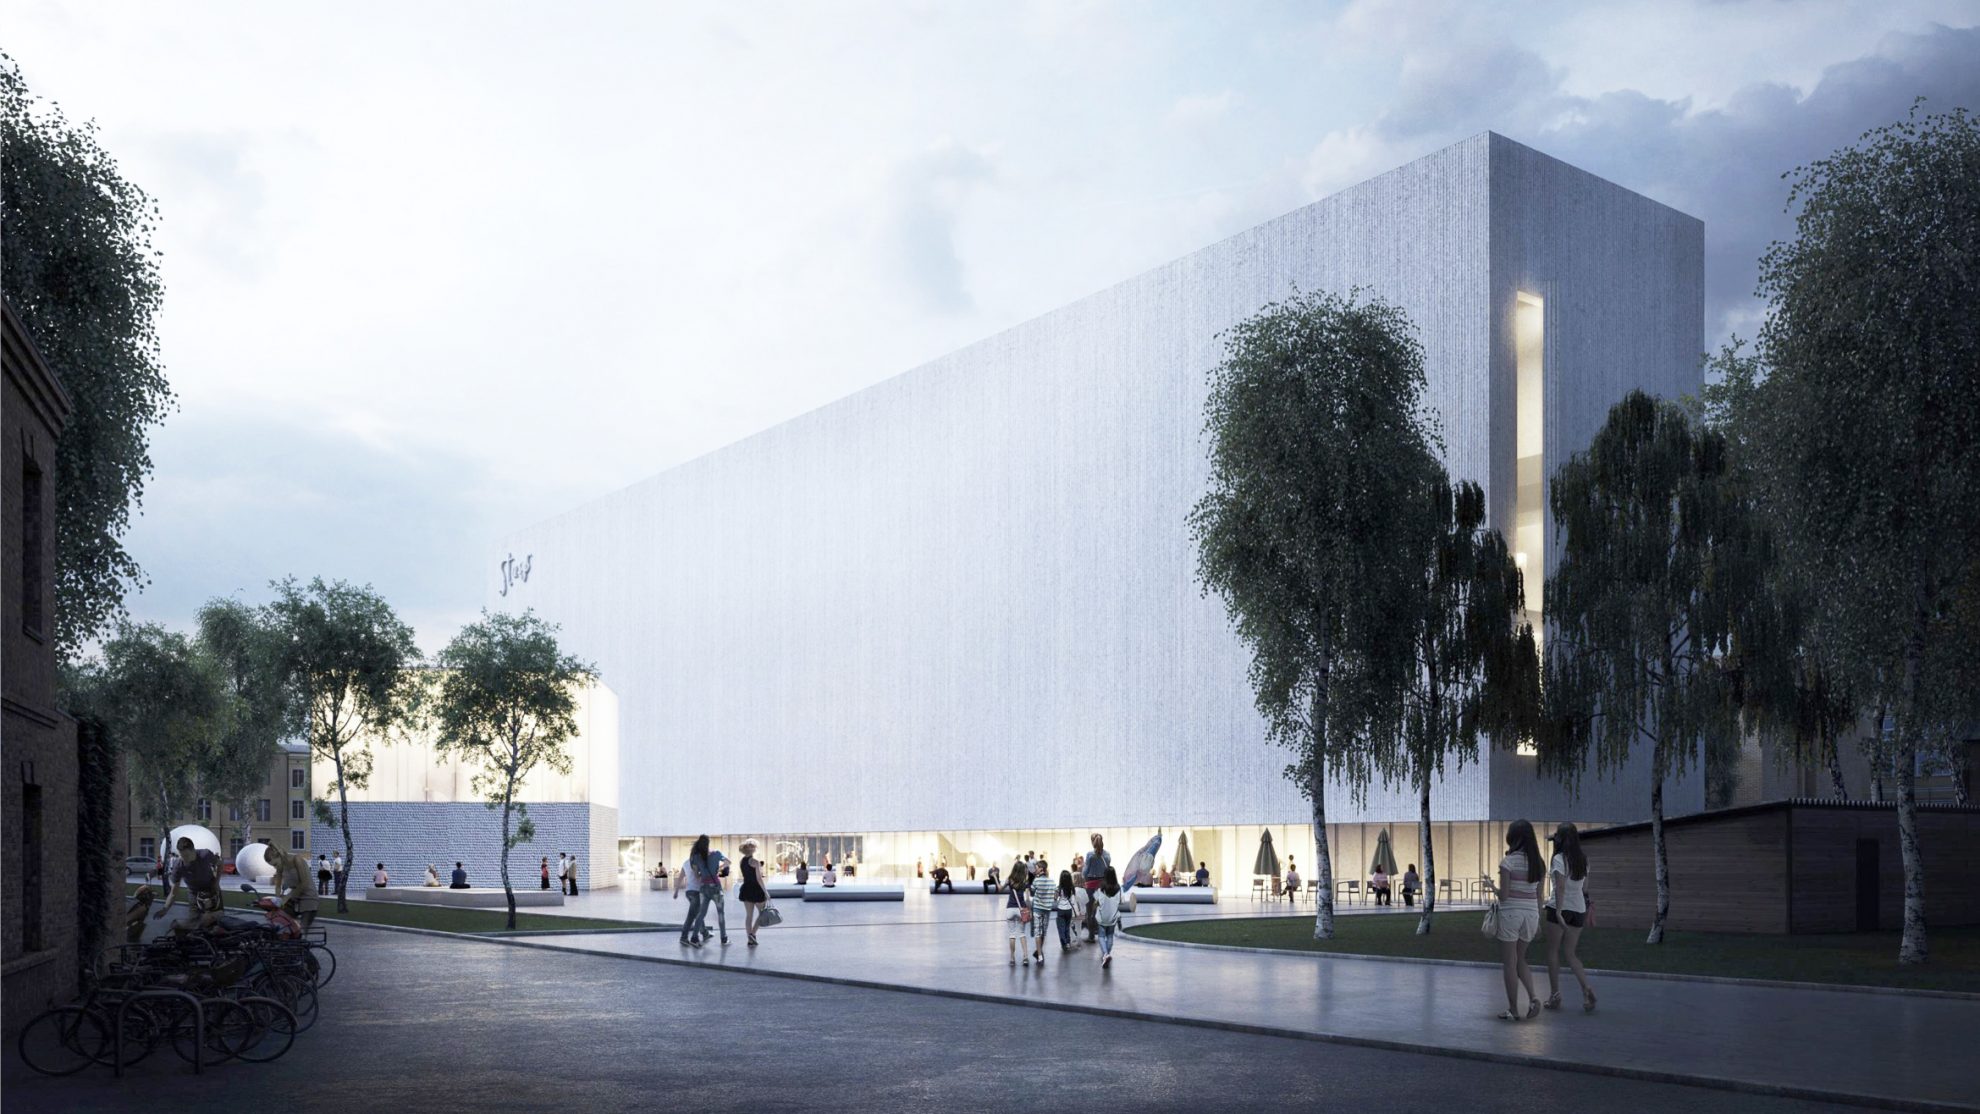 Nevienareikšmiškai vertinamas Stasio Eidrigevičiaus menų centro projektas įgauna pagreitį. Kultūros ministerija iš Europos Sąjungos fondų skyrė tris milijonus eurų senojo kino centro „Garsas“ rekonstrukcijai į būsimąjį menų centrą. Nors išskirtinio objekto vien pirmojo etapo statyboms reikės kiek daugiau nei 9 mln. eurų, darbus planuojama baigti jau 2022-aisiais.